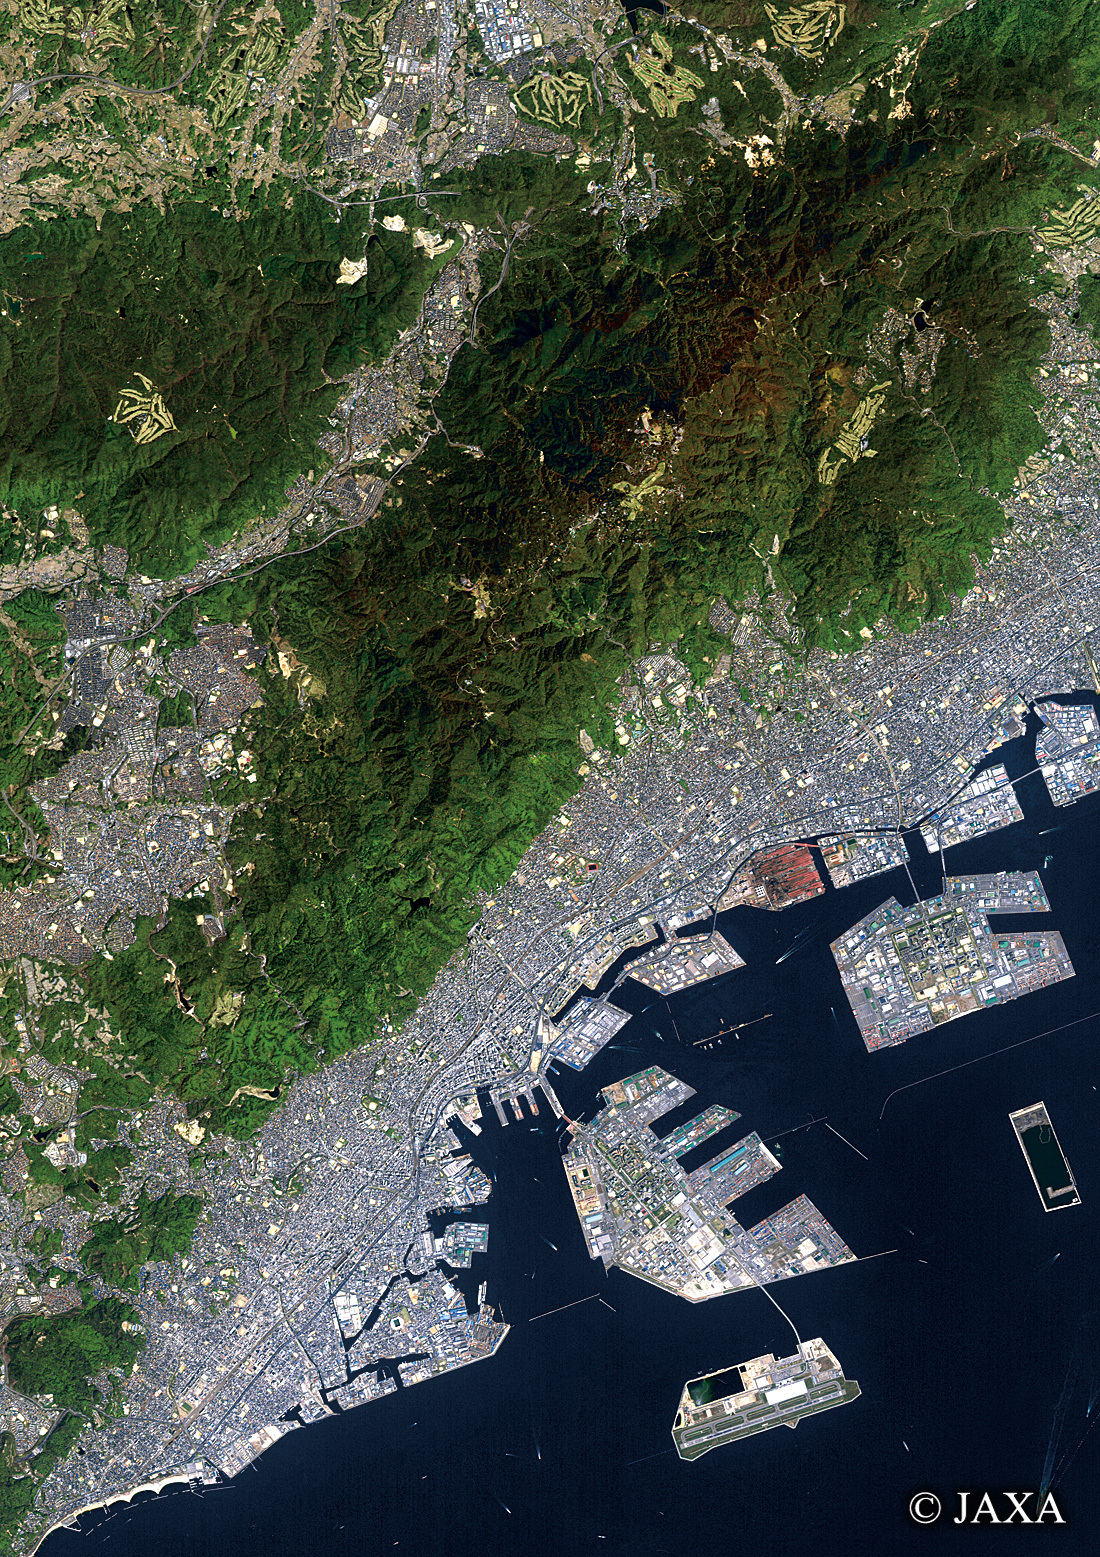 だいちから見た日本の都市 神戸市中央区周辺辺:衛星画像